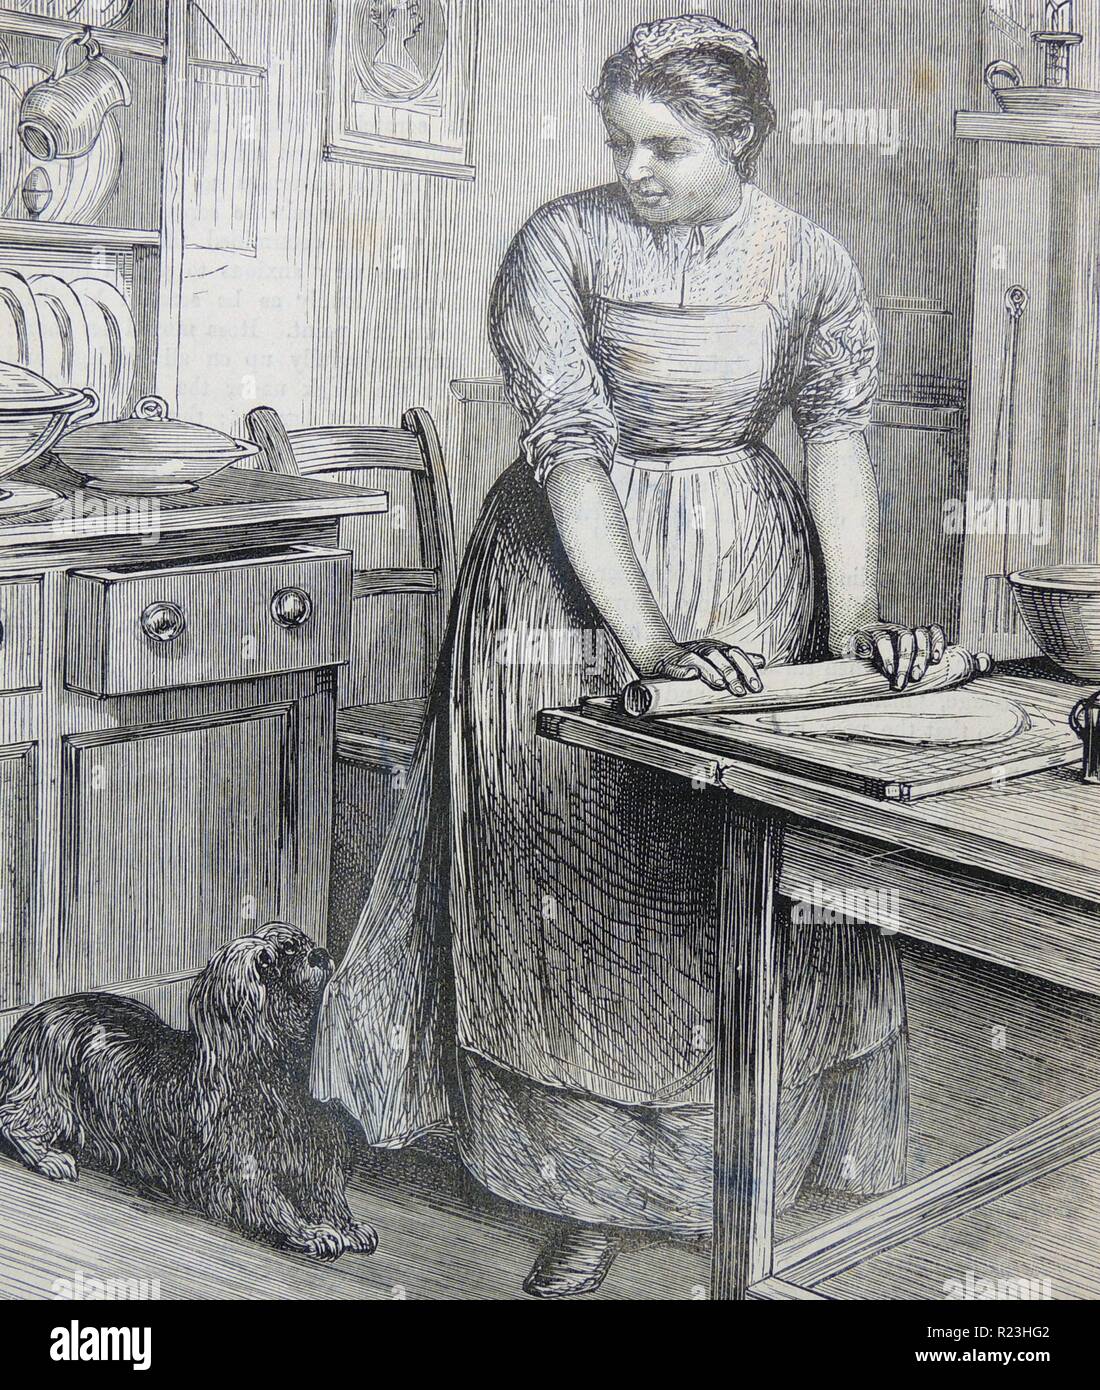 Frau am Küchentisch Teig ausrollen. Gravur, London, 1882. Stockfoto